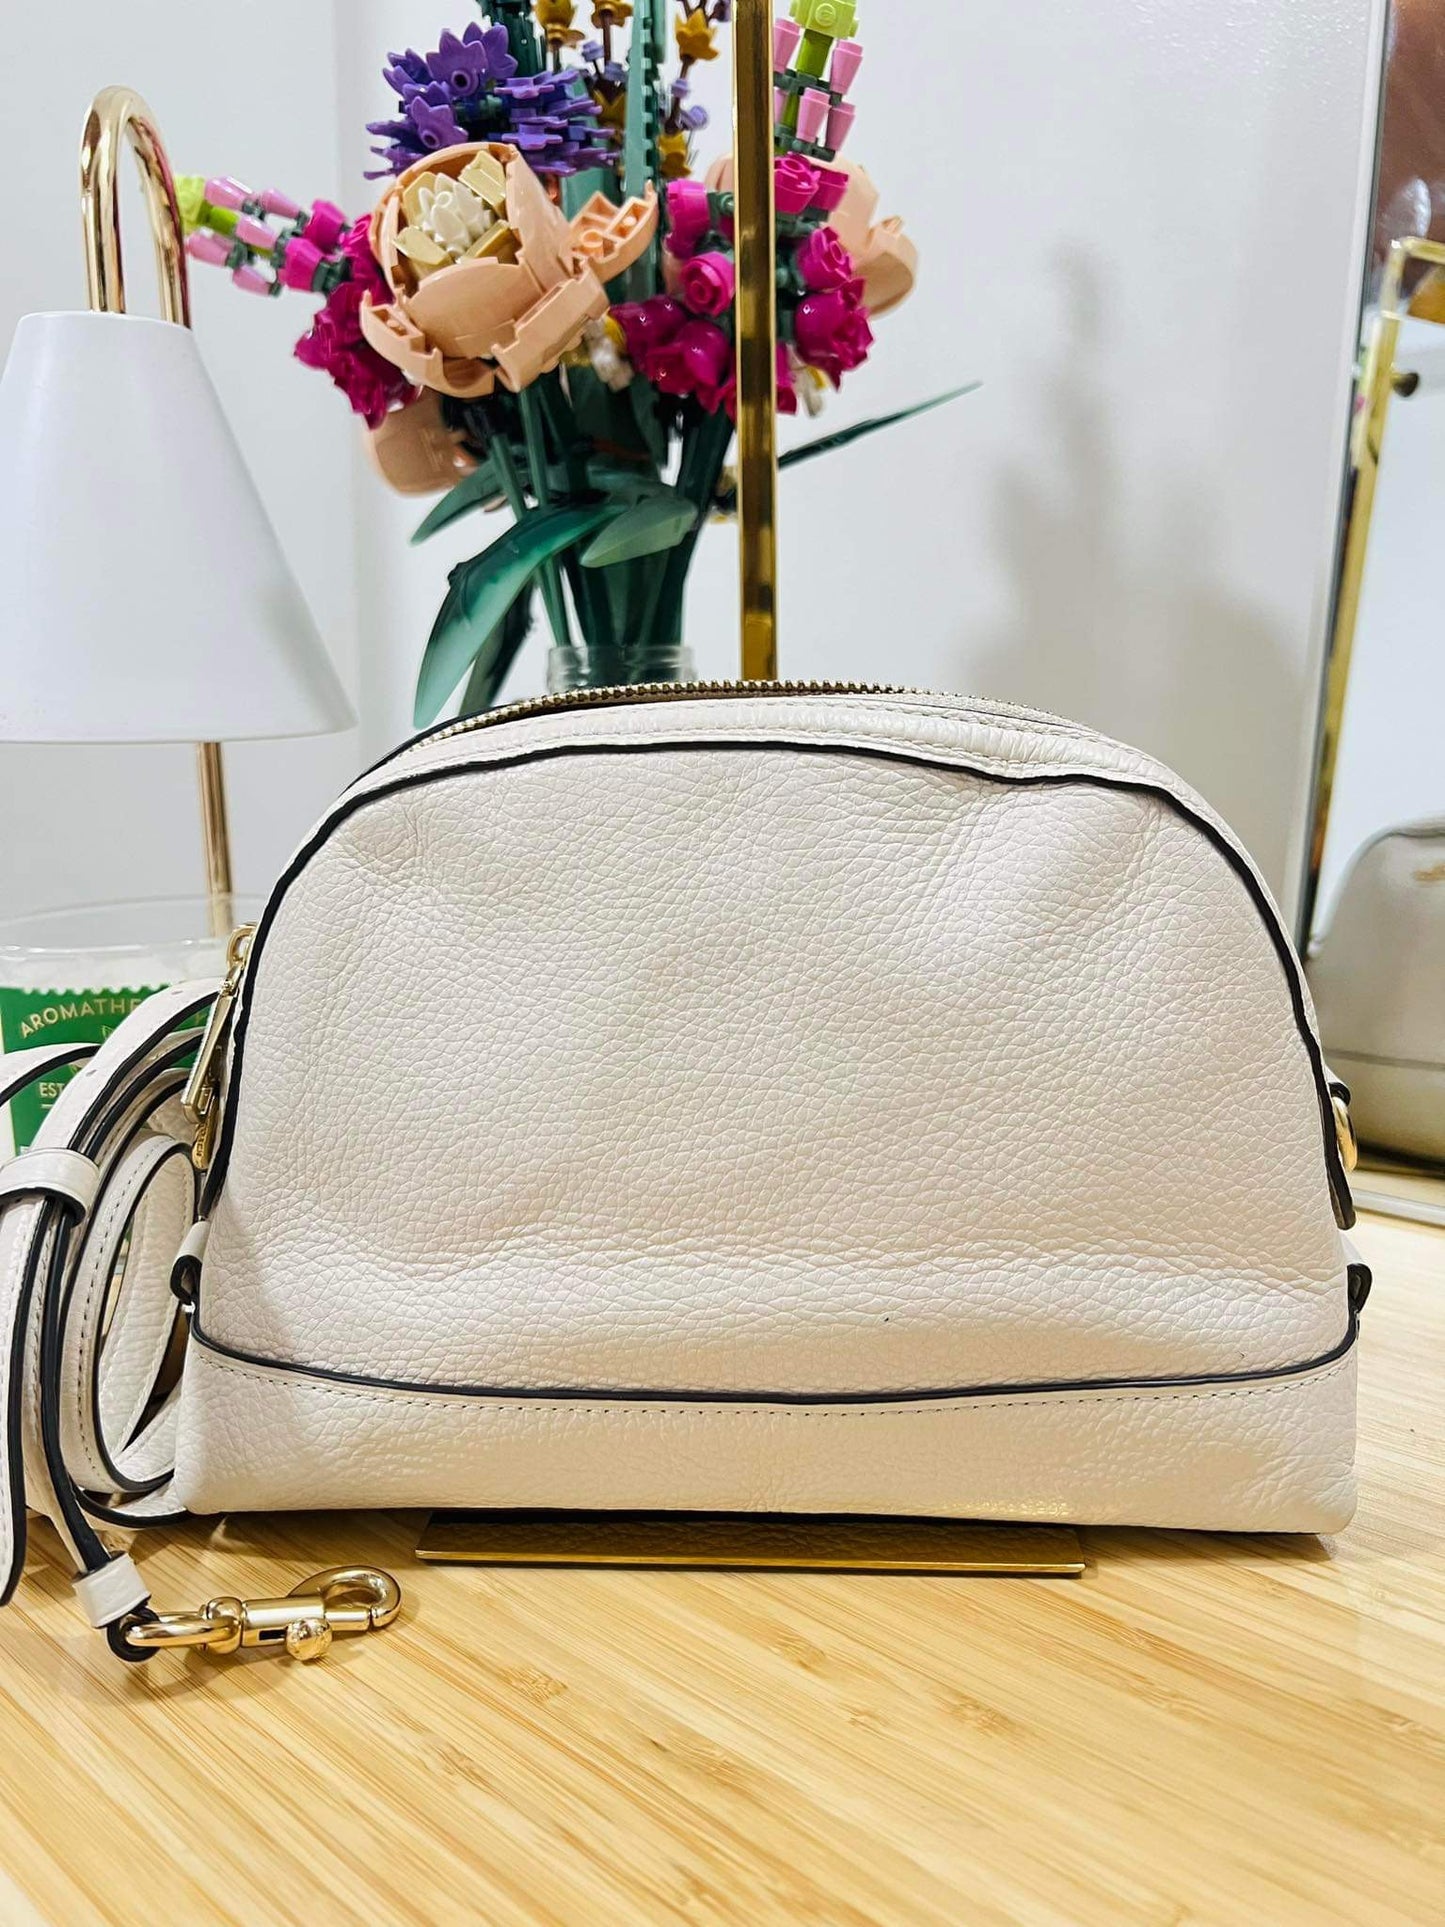 AUTHENTIC/ORIGINAL Preloved Coach Mini Dome Crossbody White Bag